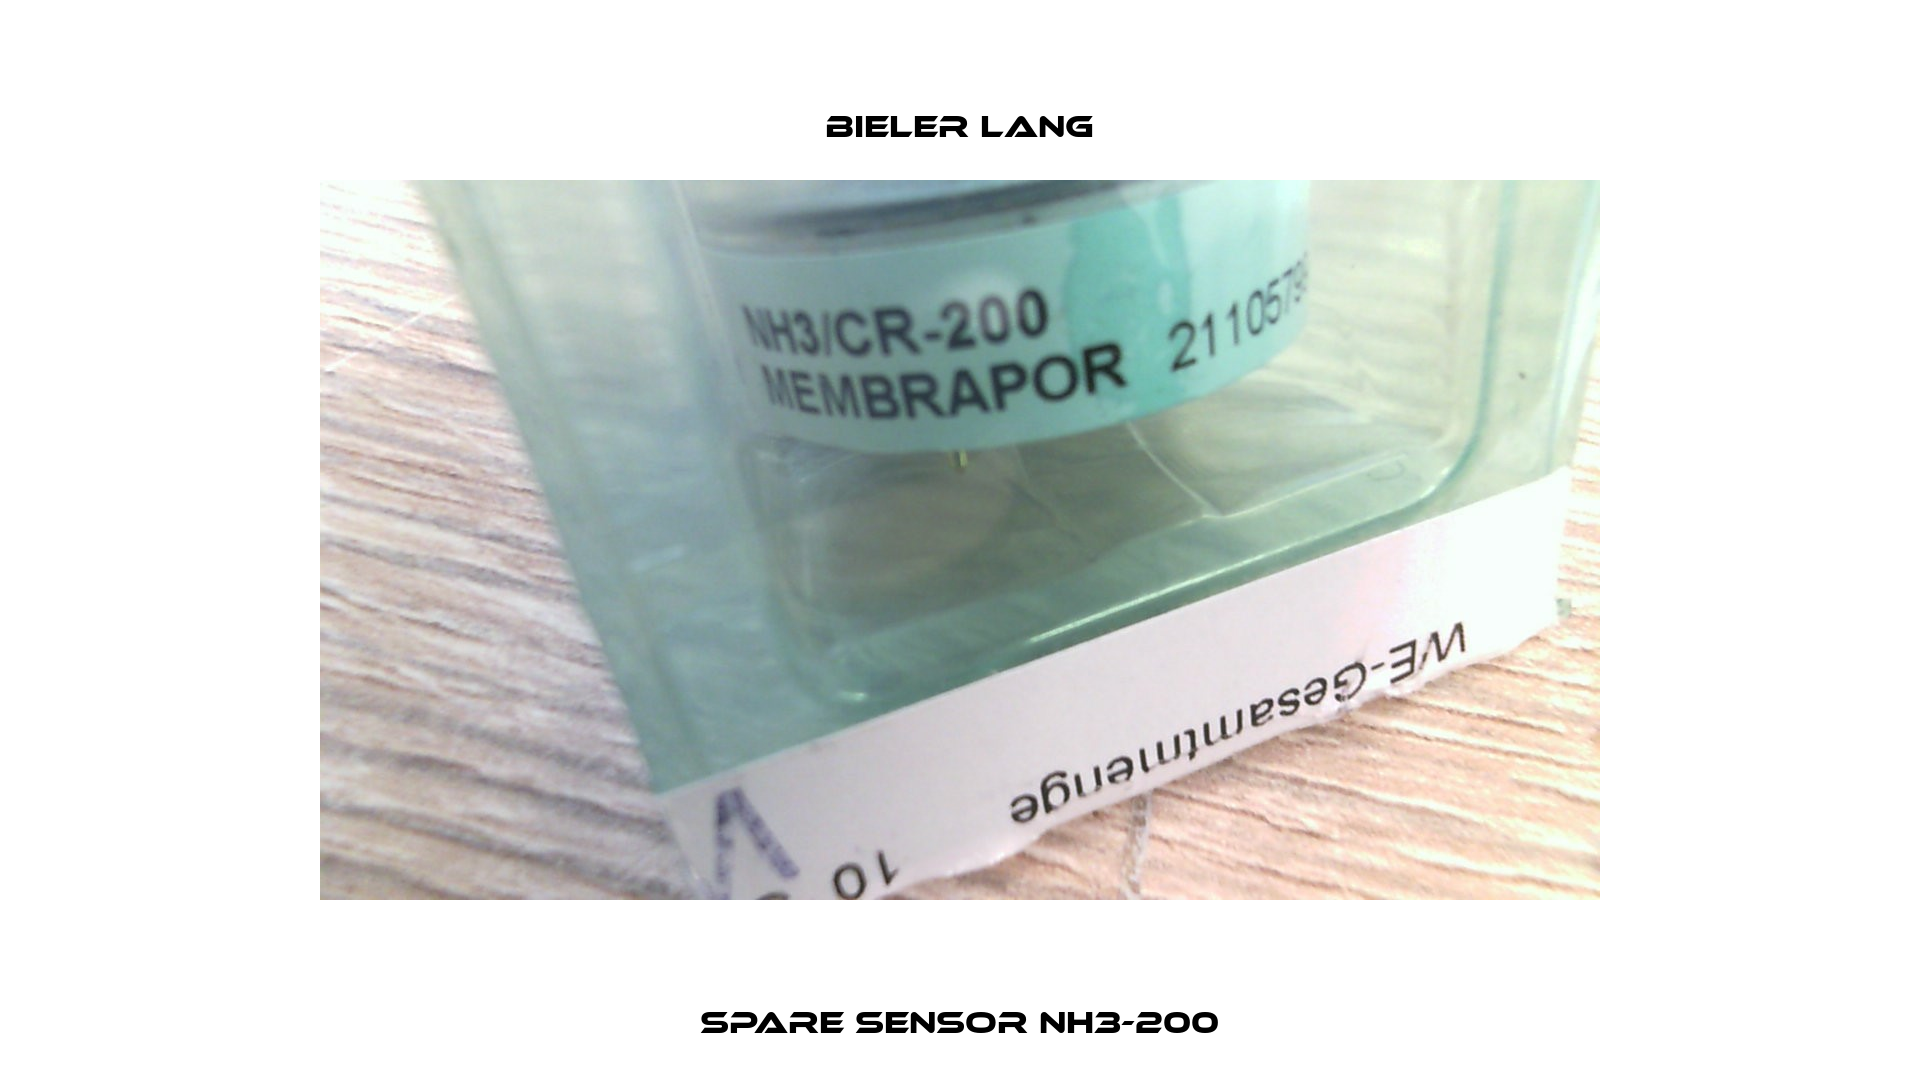 Spare sensor NH3-200 Bieler Lang